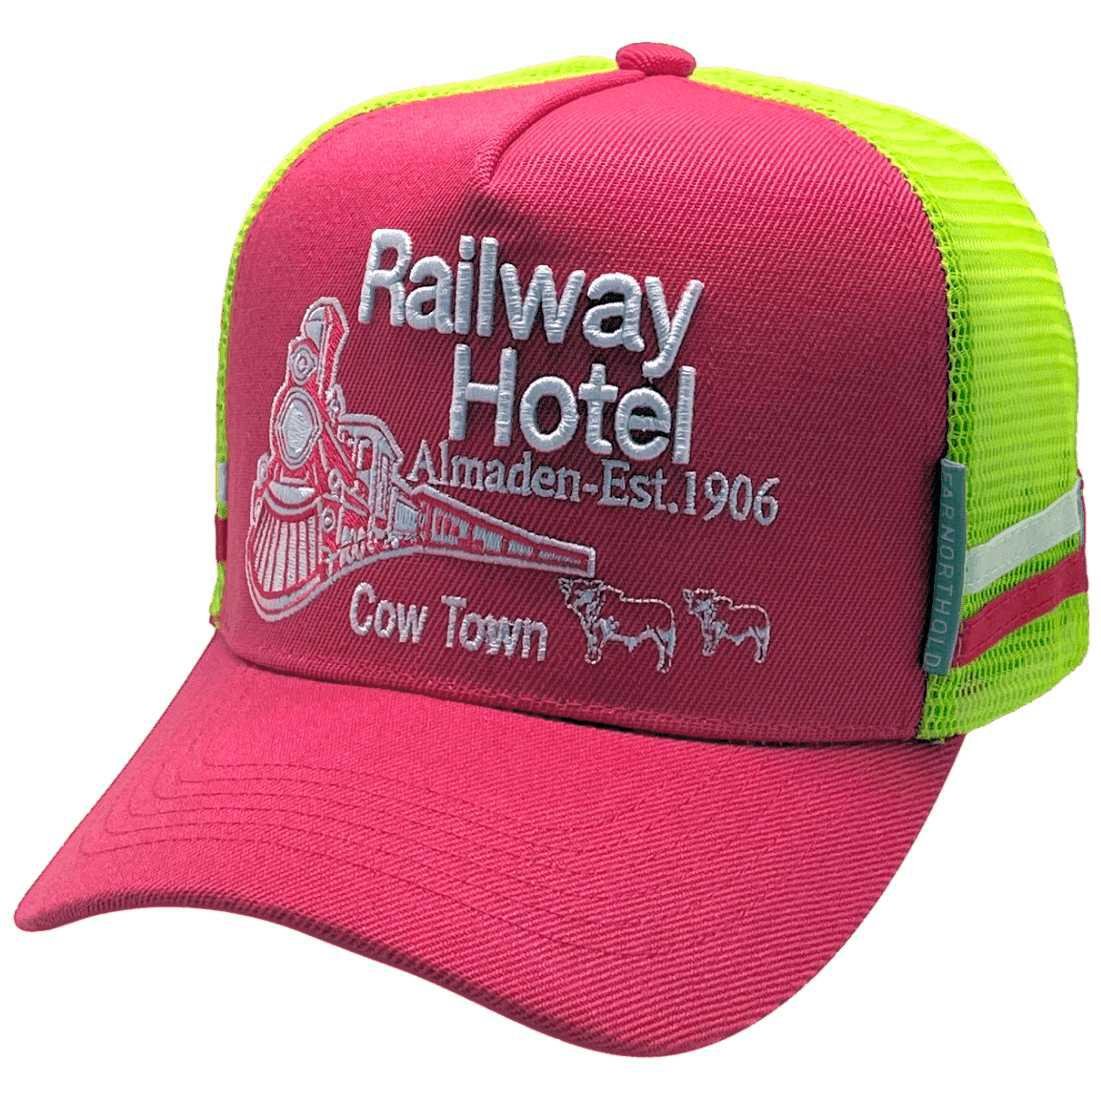 Railway Hotel Almaden HP Midrange Aussie Trucker Hat Acrylic